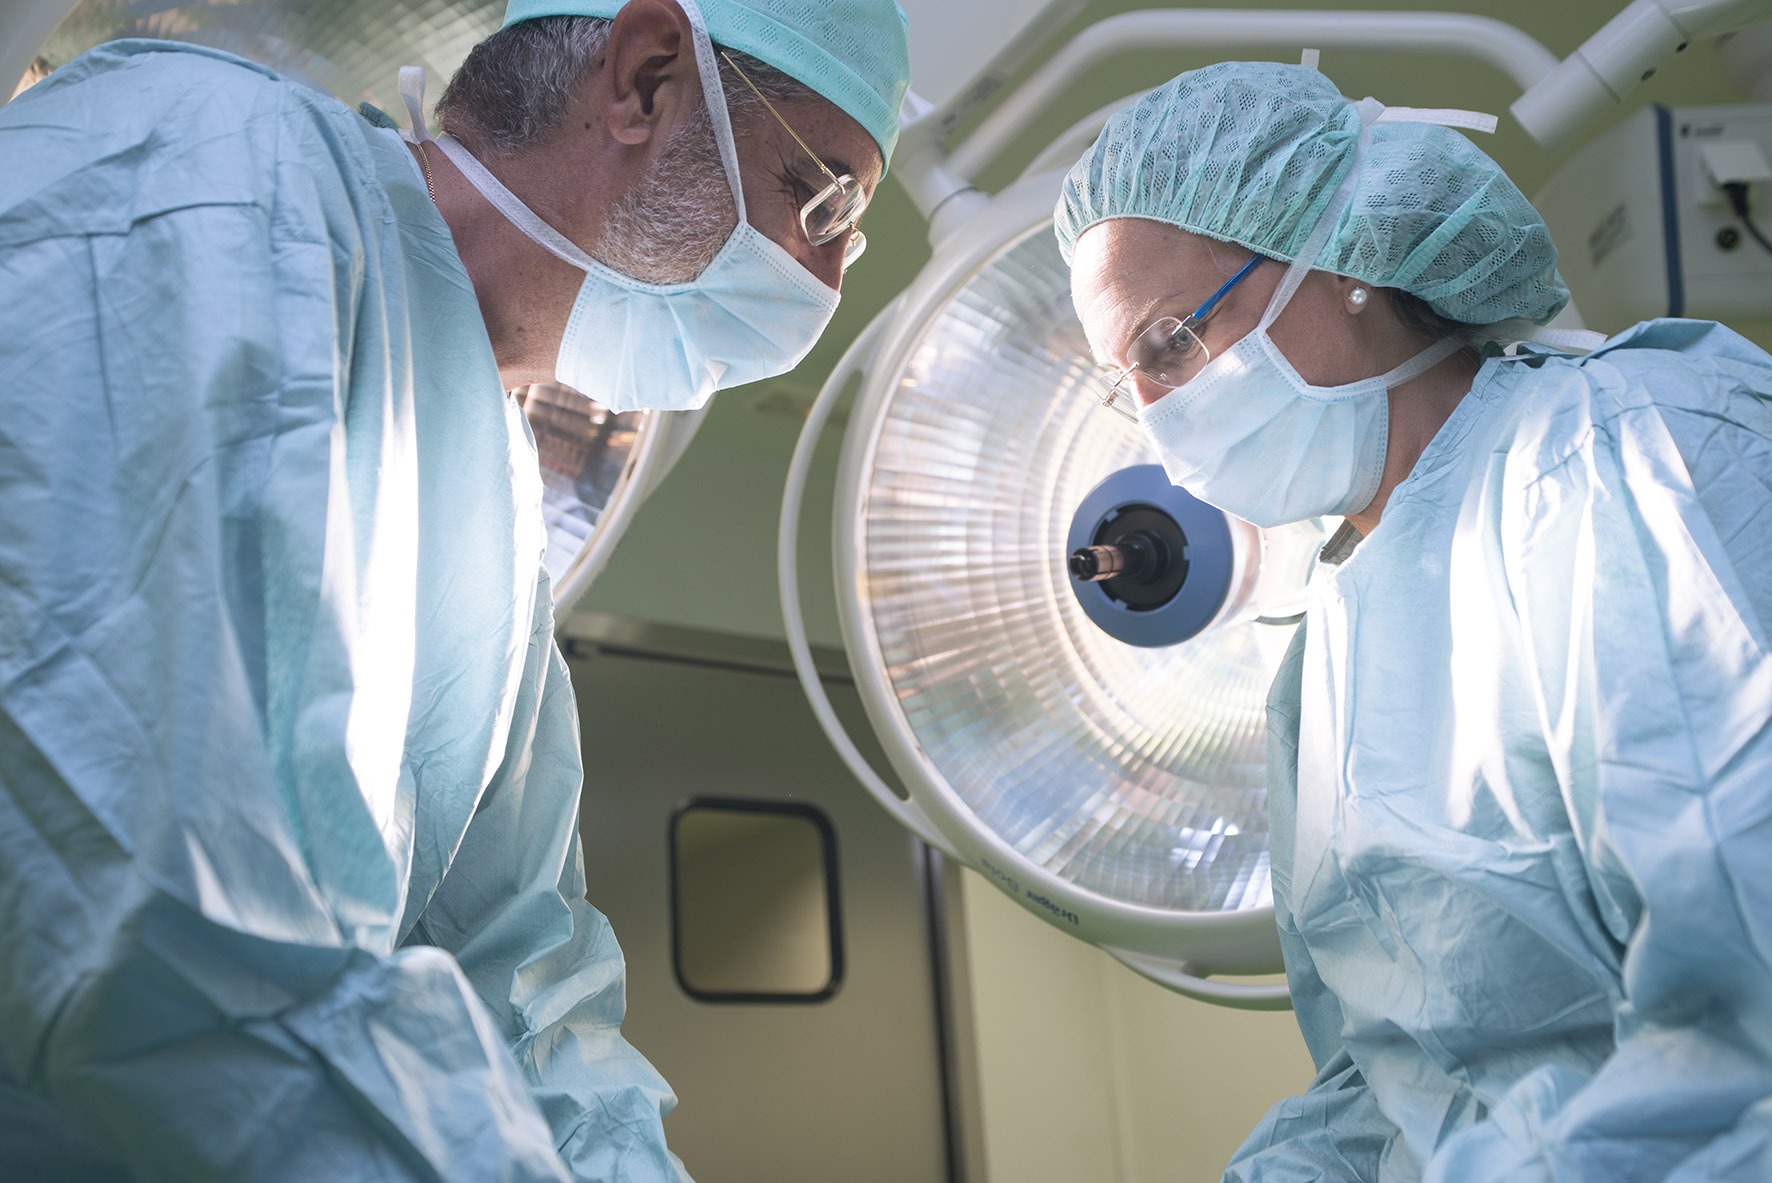 Doctores realizando una cirugía ambulatoria